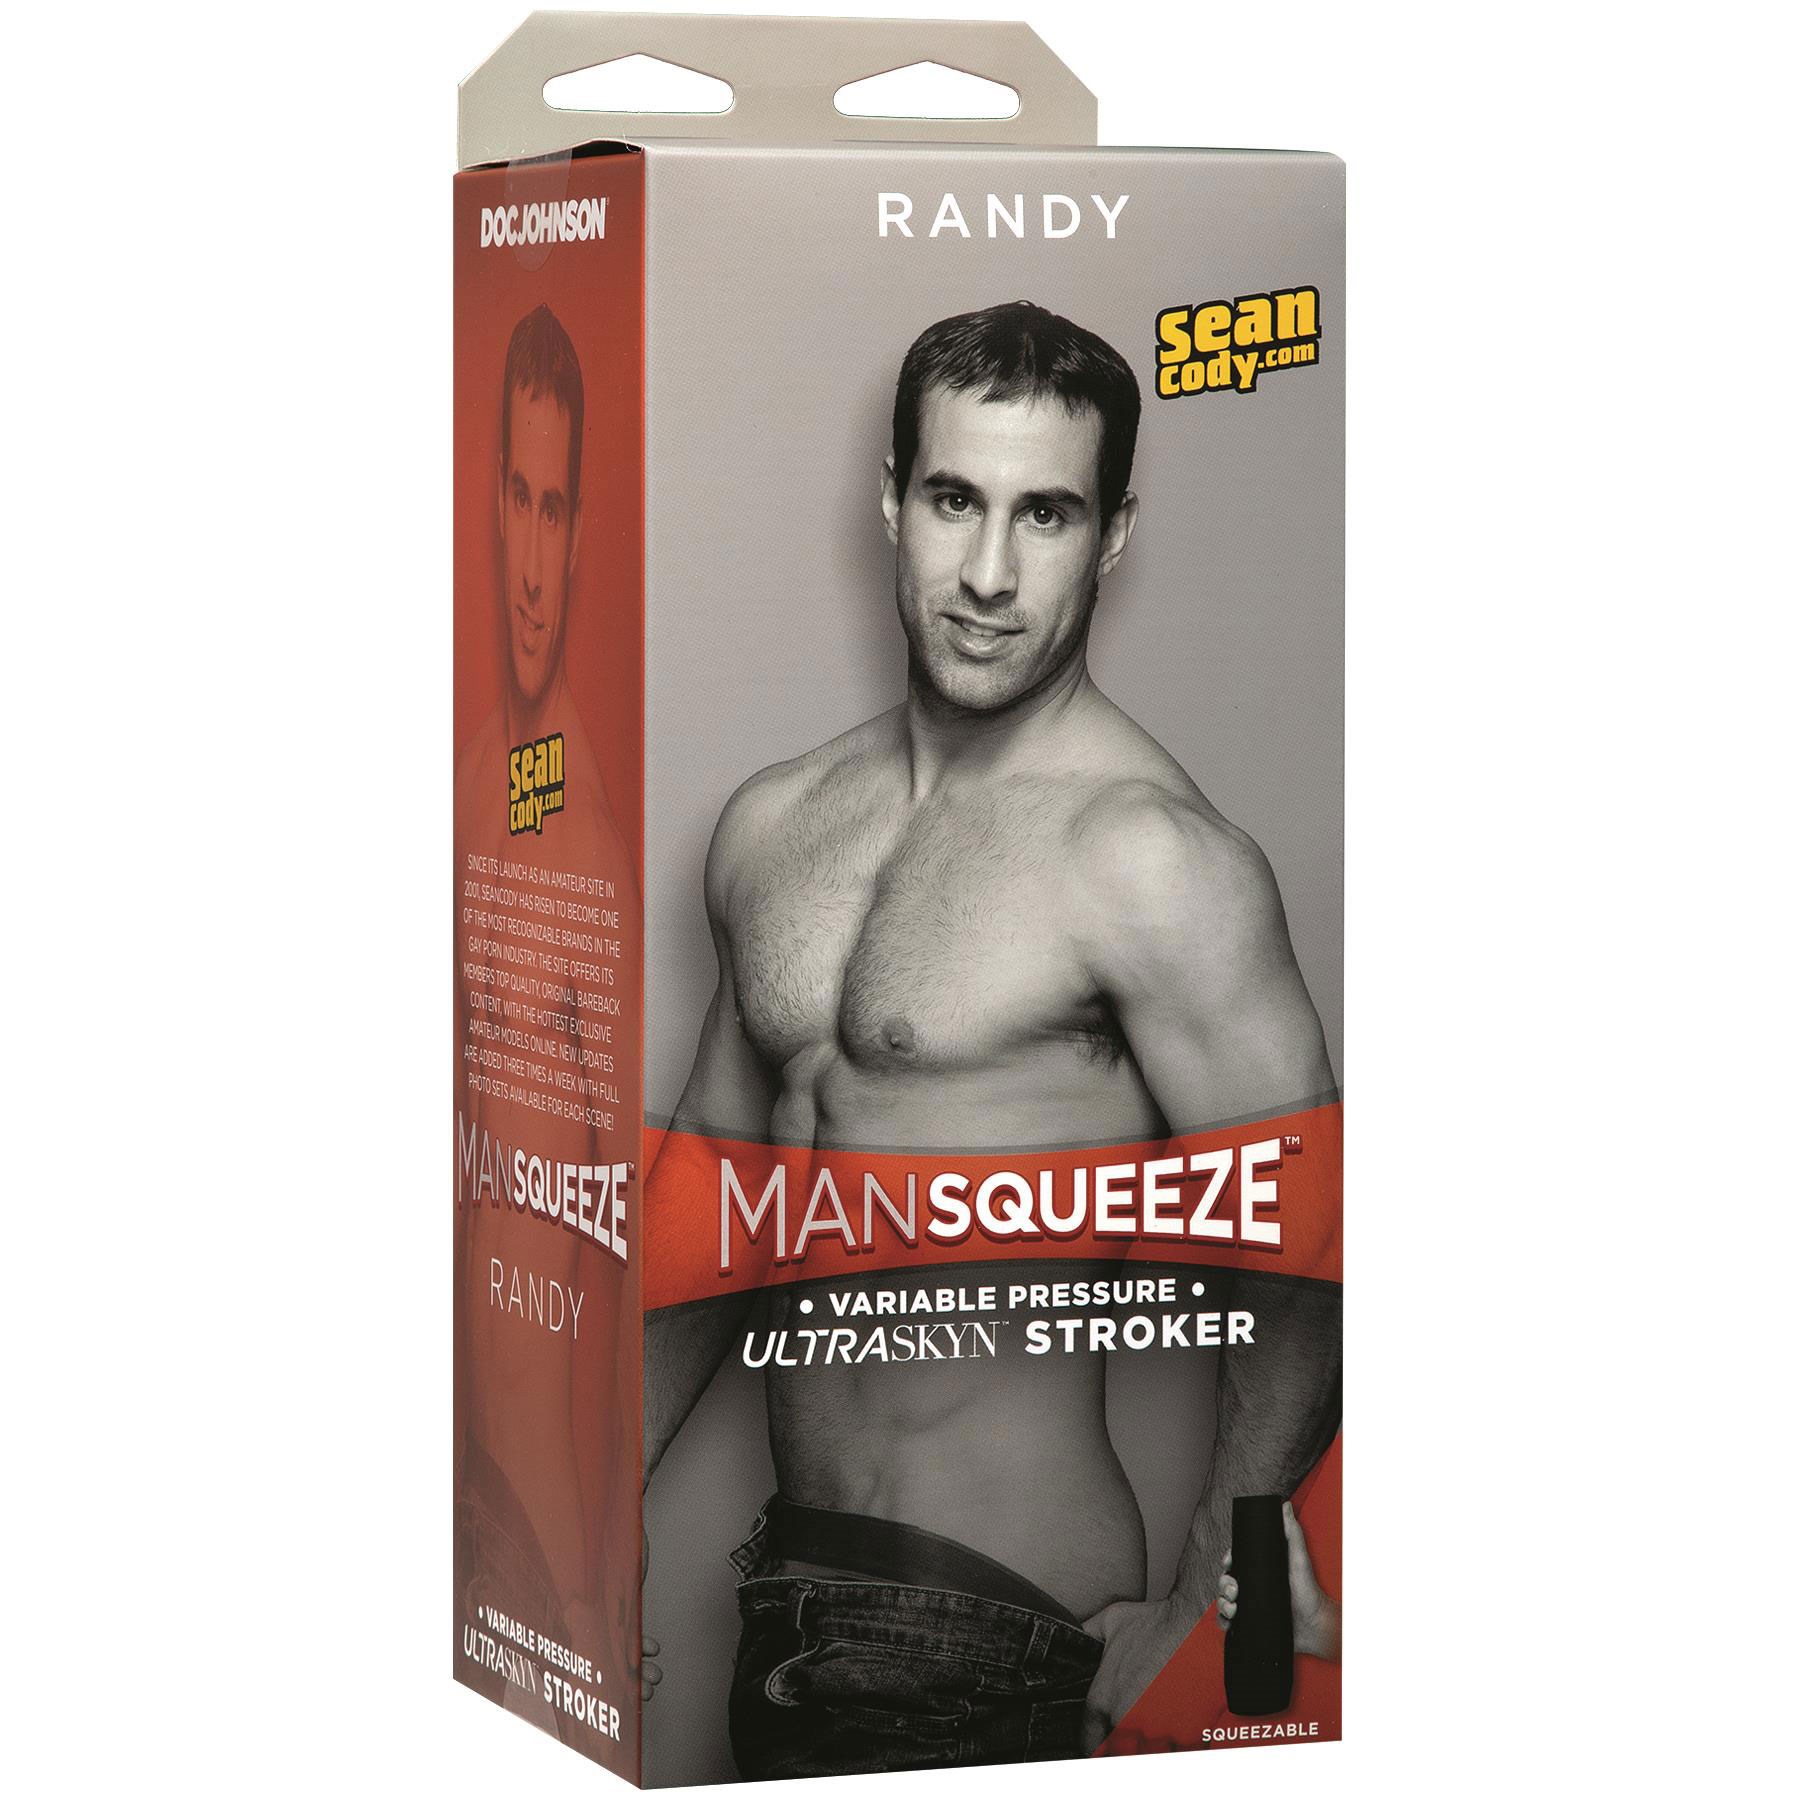 Mansqueeze Randy Ass Stroker packaging